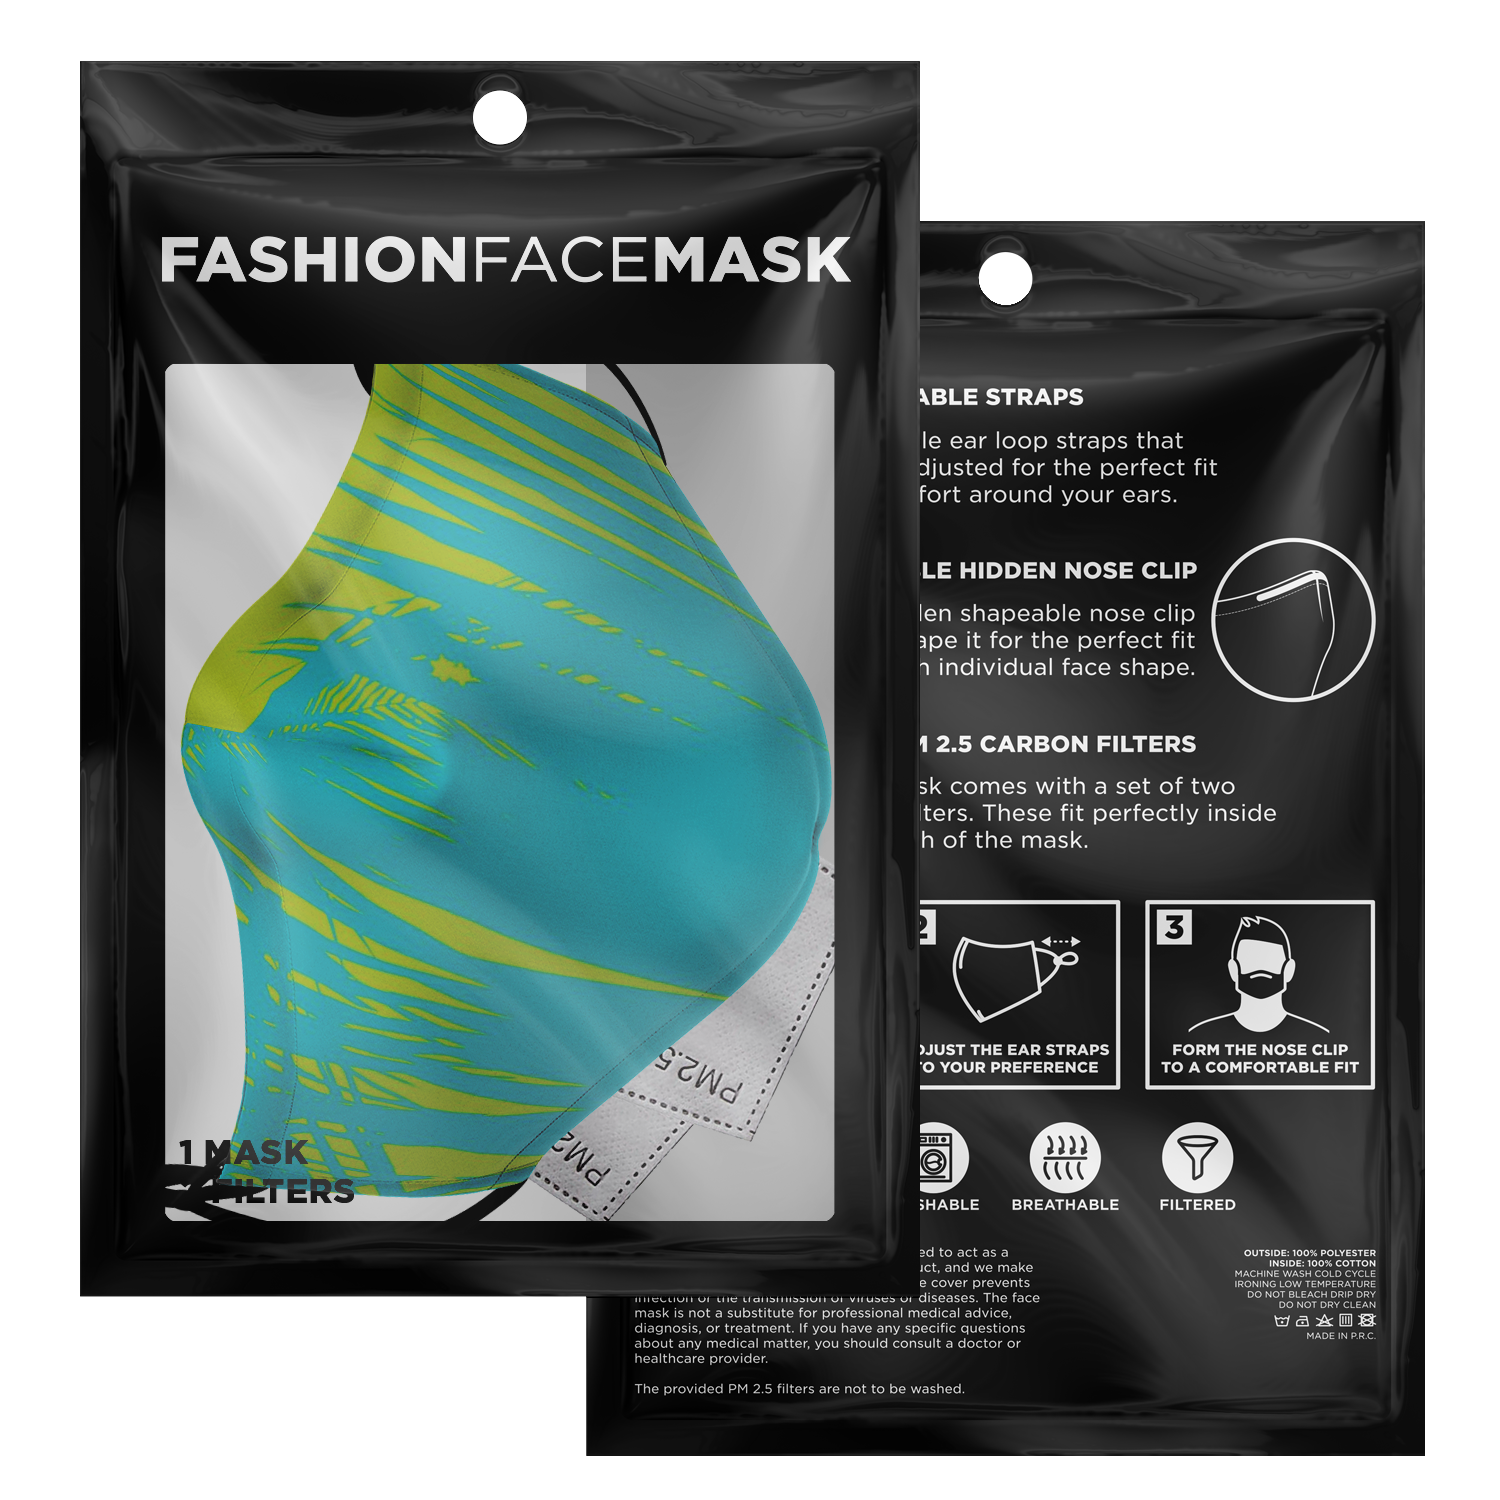 Palm Leaf Face Mask